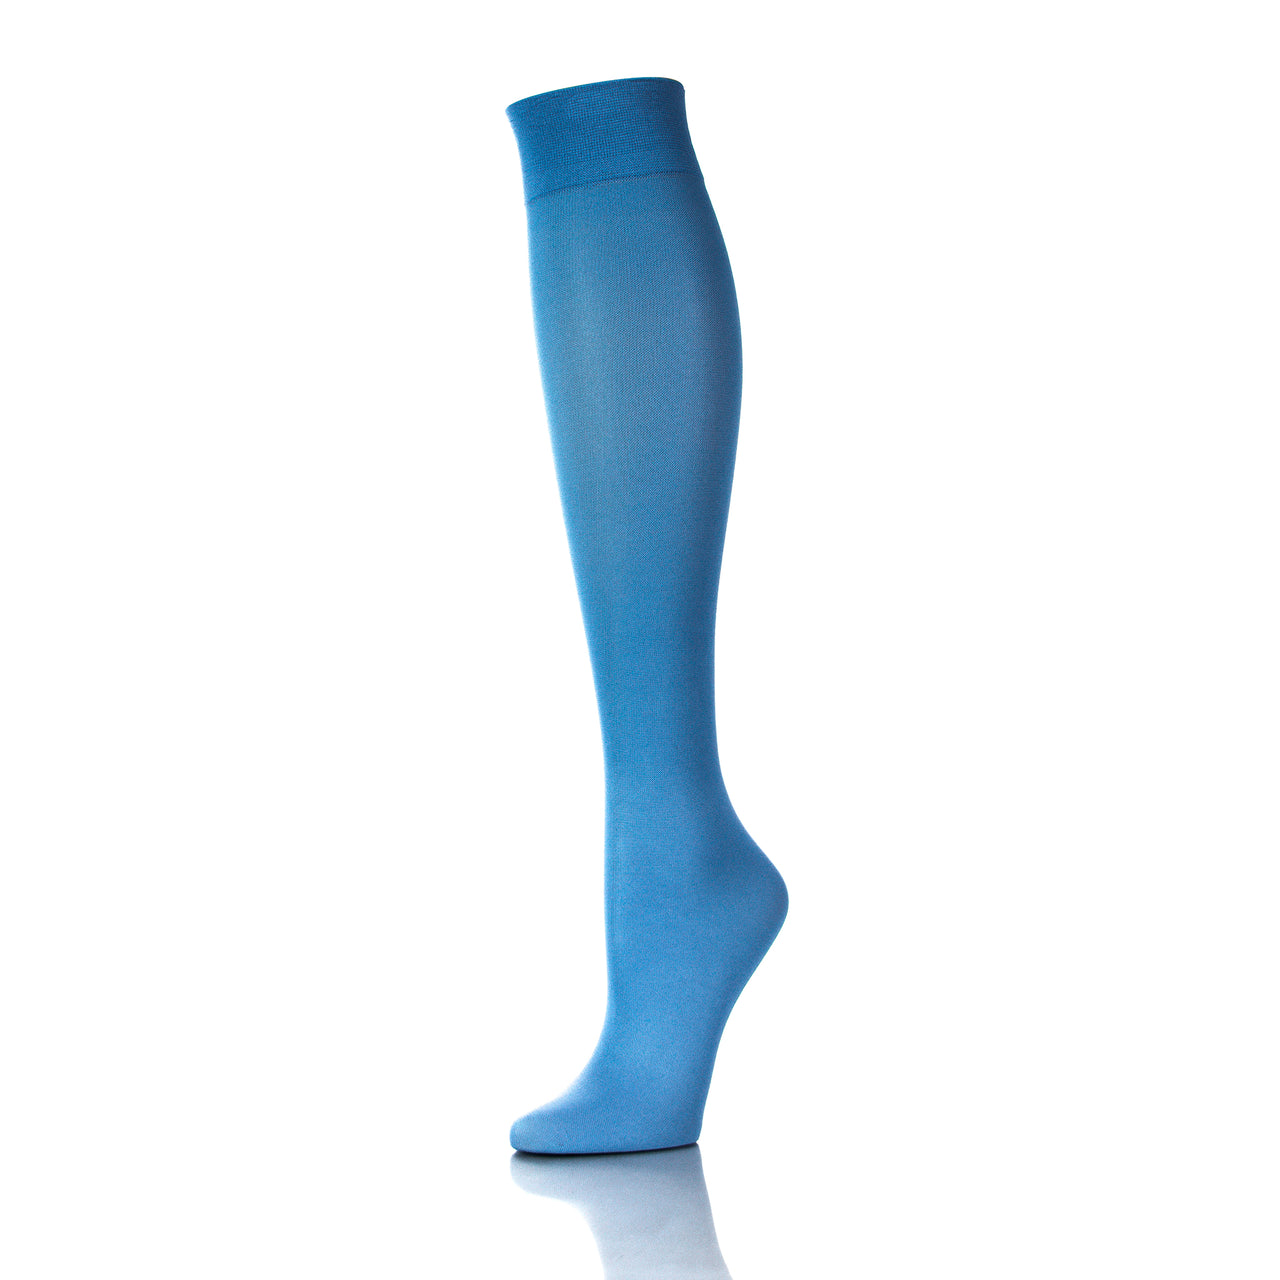 Bas de contention 20-30 mmHg couleur ciel bleu pour femme, vue de côté, soutien efficace pour les jambes - Softmedi